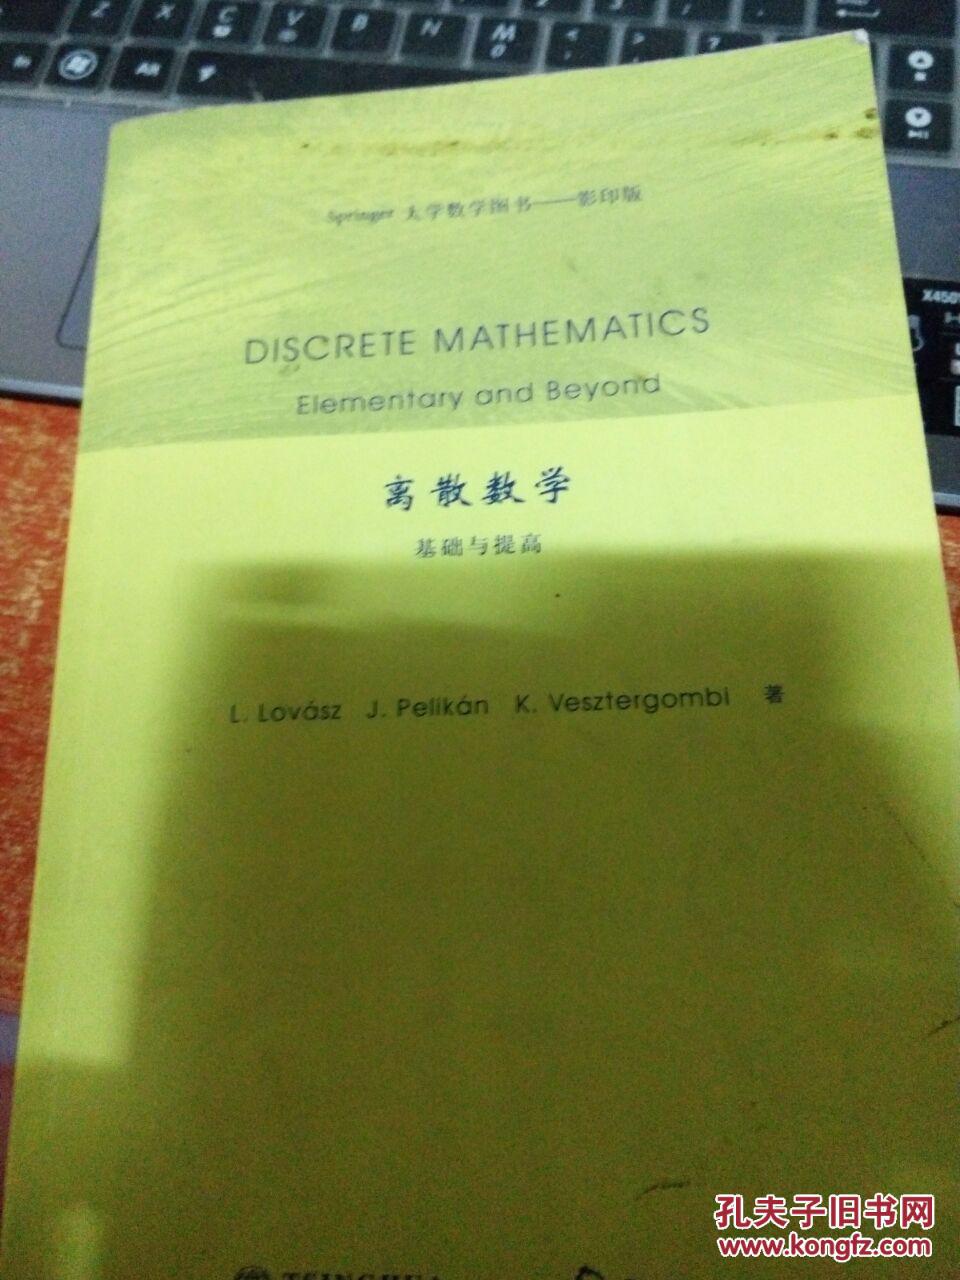 【图】Springer大学数学图书·离散数学:基础与